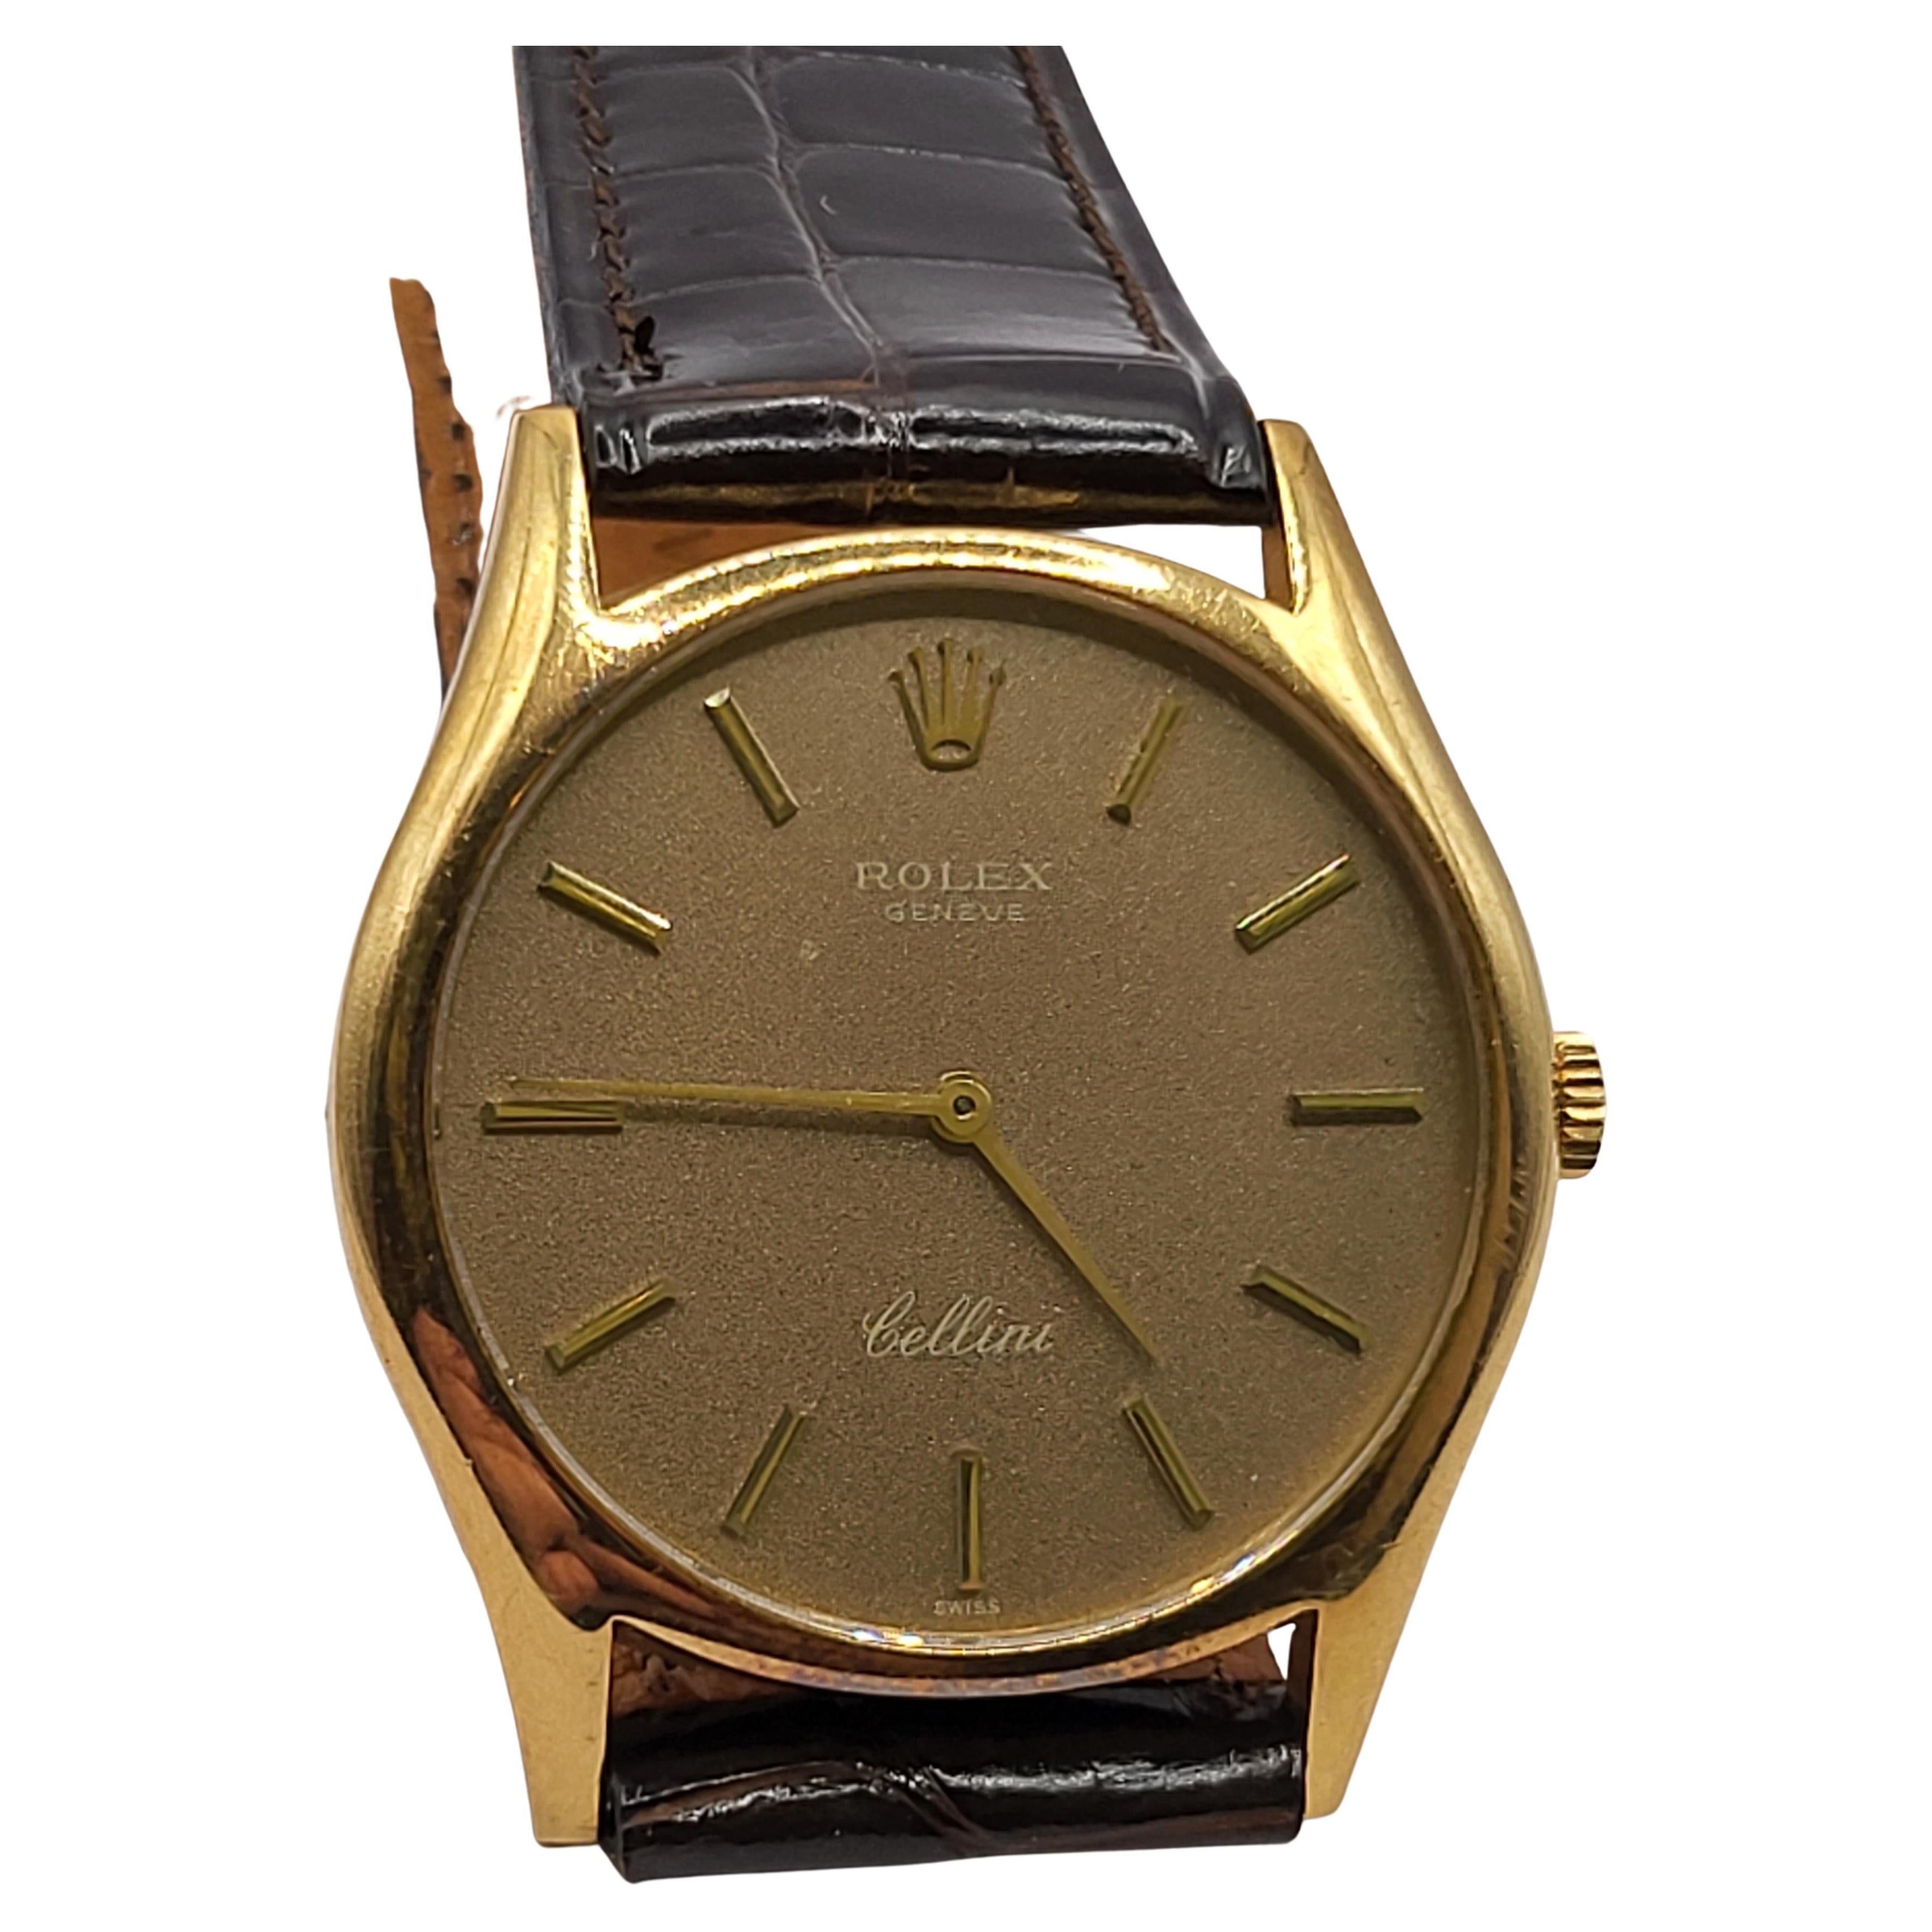 18 Kt. Rolex Cellini Réf. 3904 Montre-bracelet mécanique manuelle Cal. 1600 collectionneurs